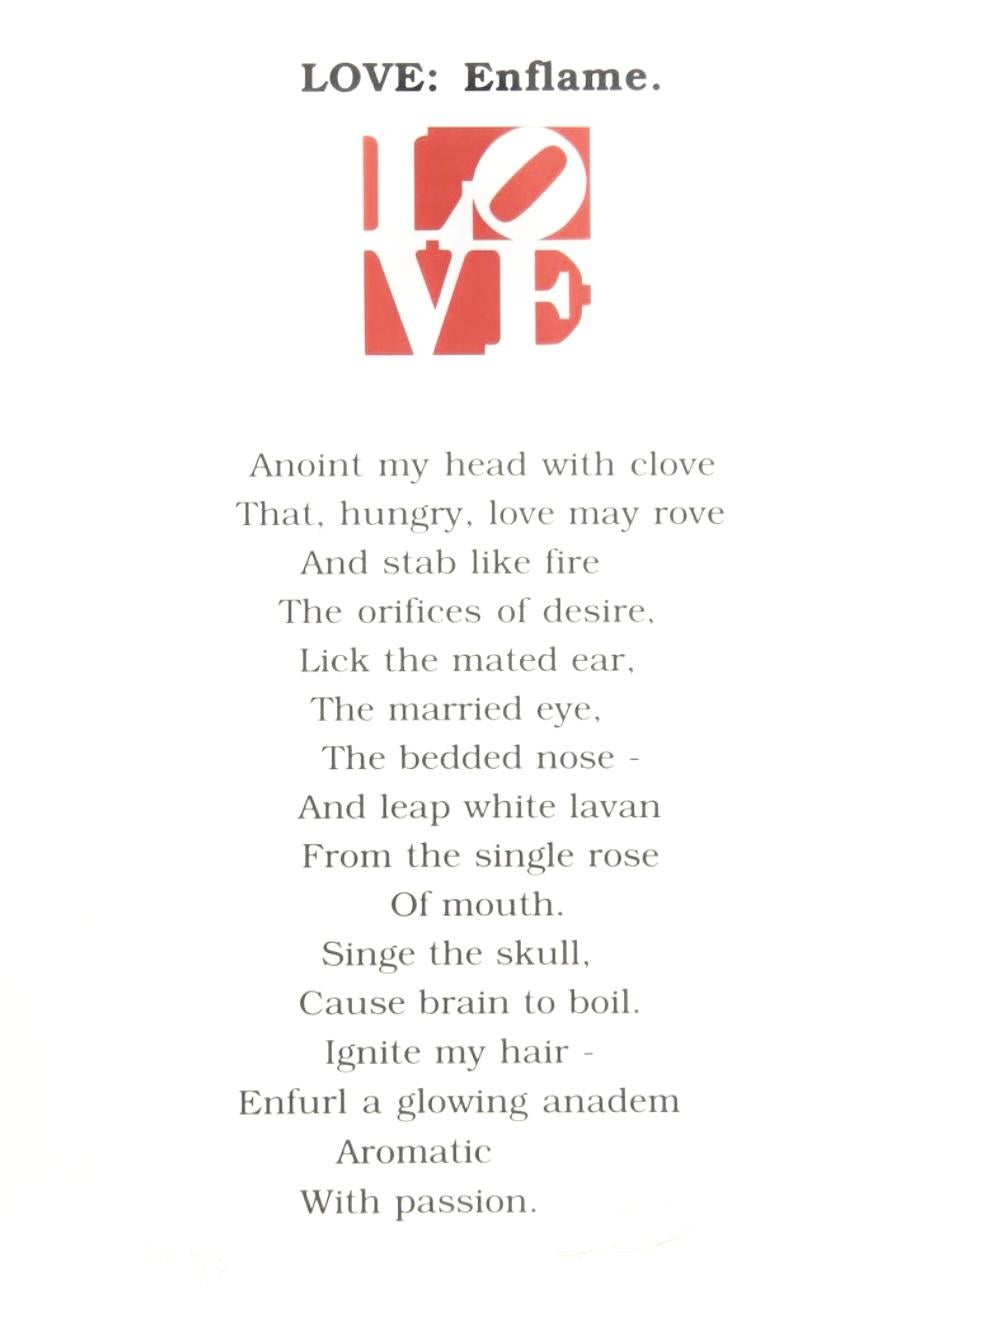 LOVE: Enflame (Vintage des Portfolios der Liebe) – Print von Robert Indiana